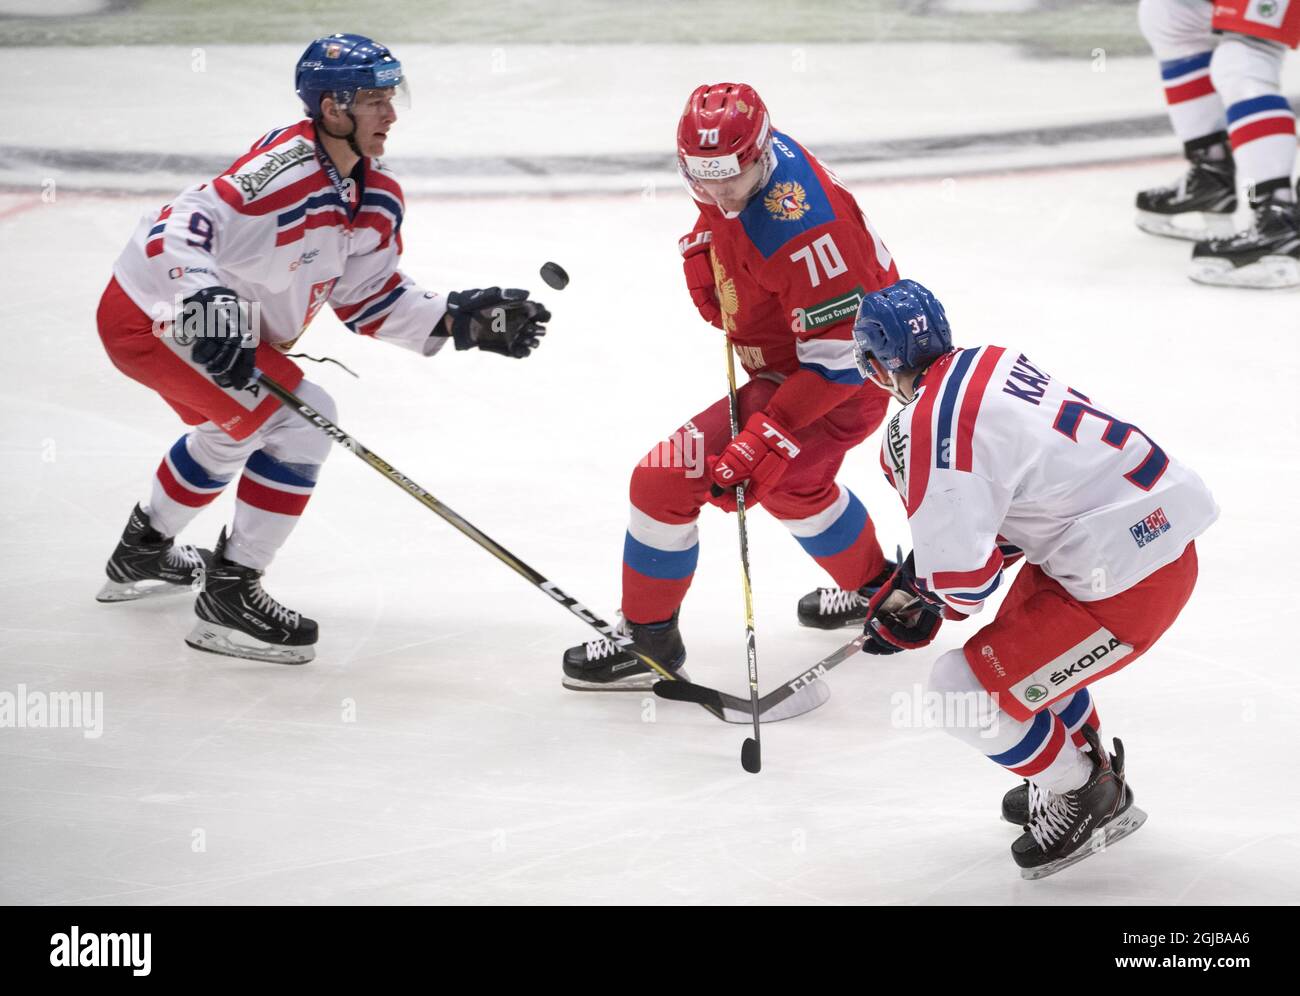 Игры хоккей клюшкой. Лед хоккей. Хоккеист на льду. Шайба для хоккея. Хоккей на льду Россия.